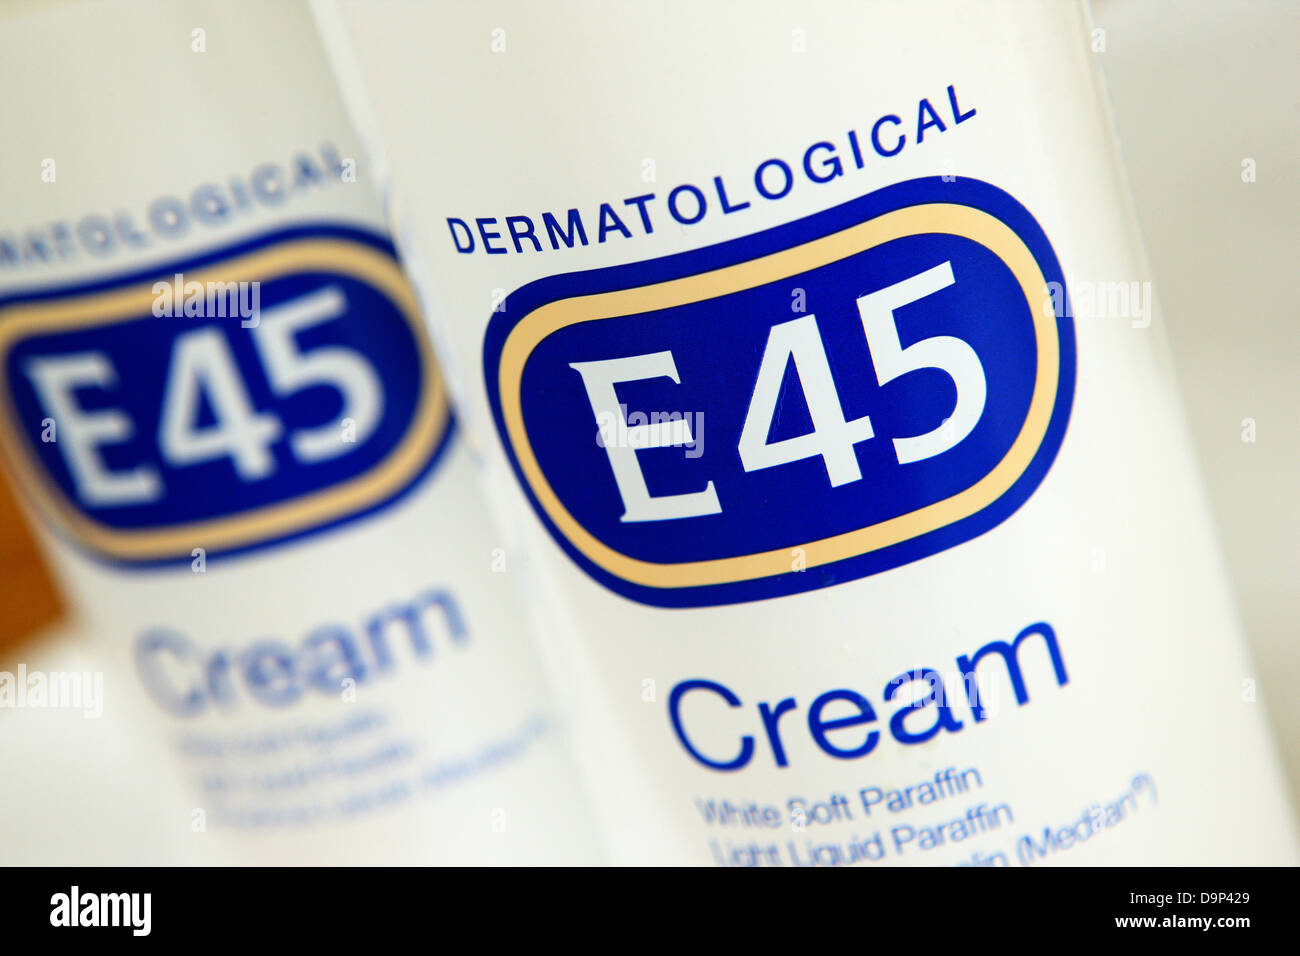 E45 cream Stock Photo